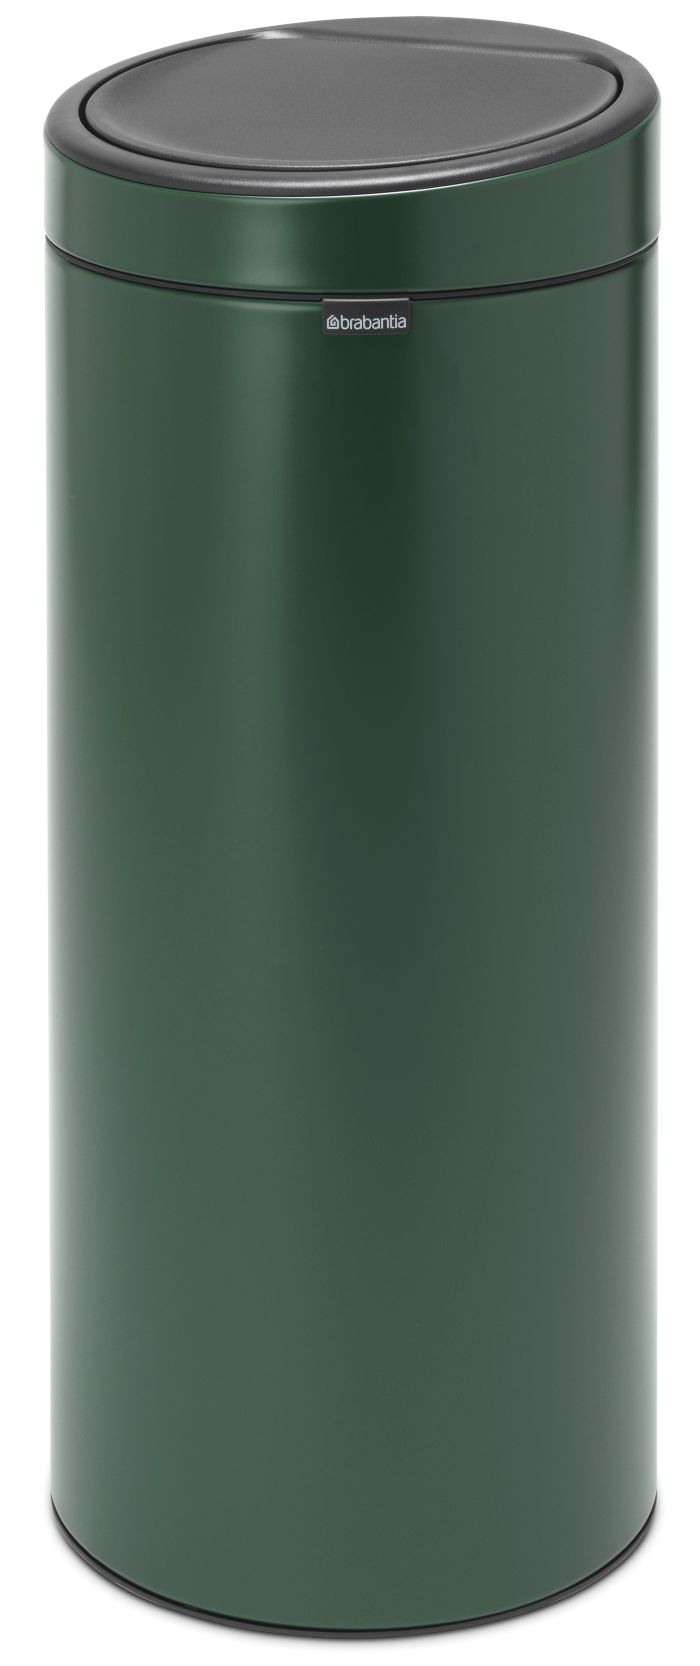 Levně Brabantia dotykový odpadkový koš Bin New, 30l, zelená, 304262